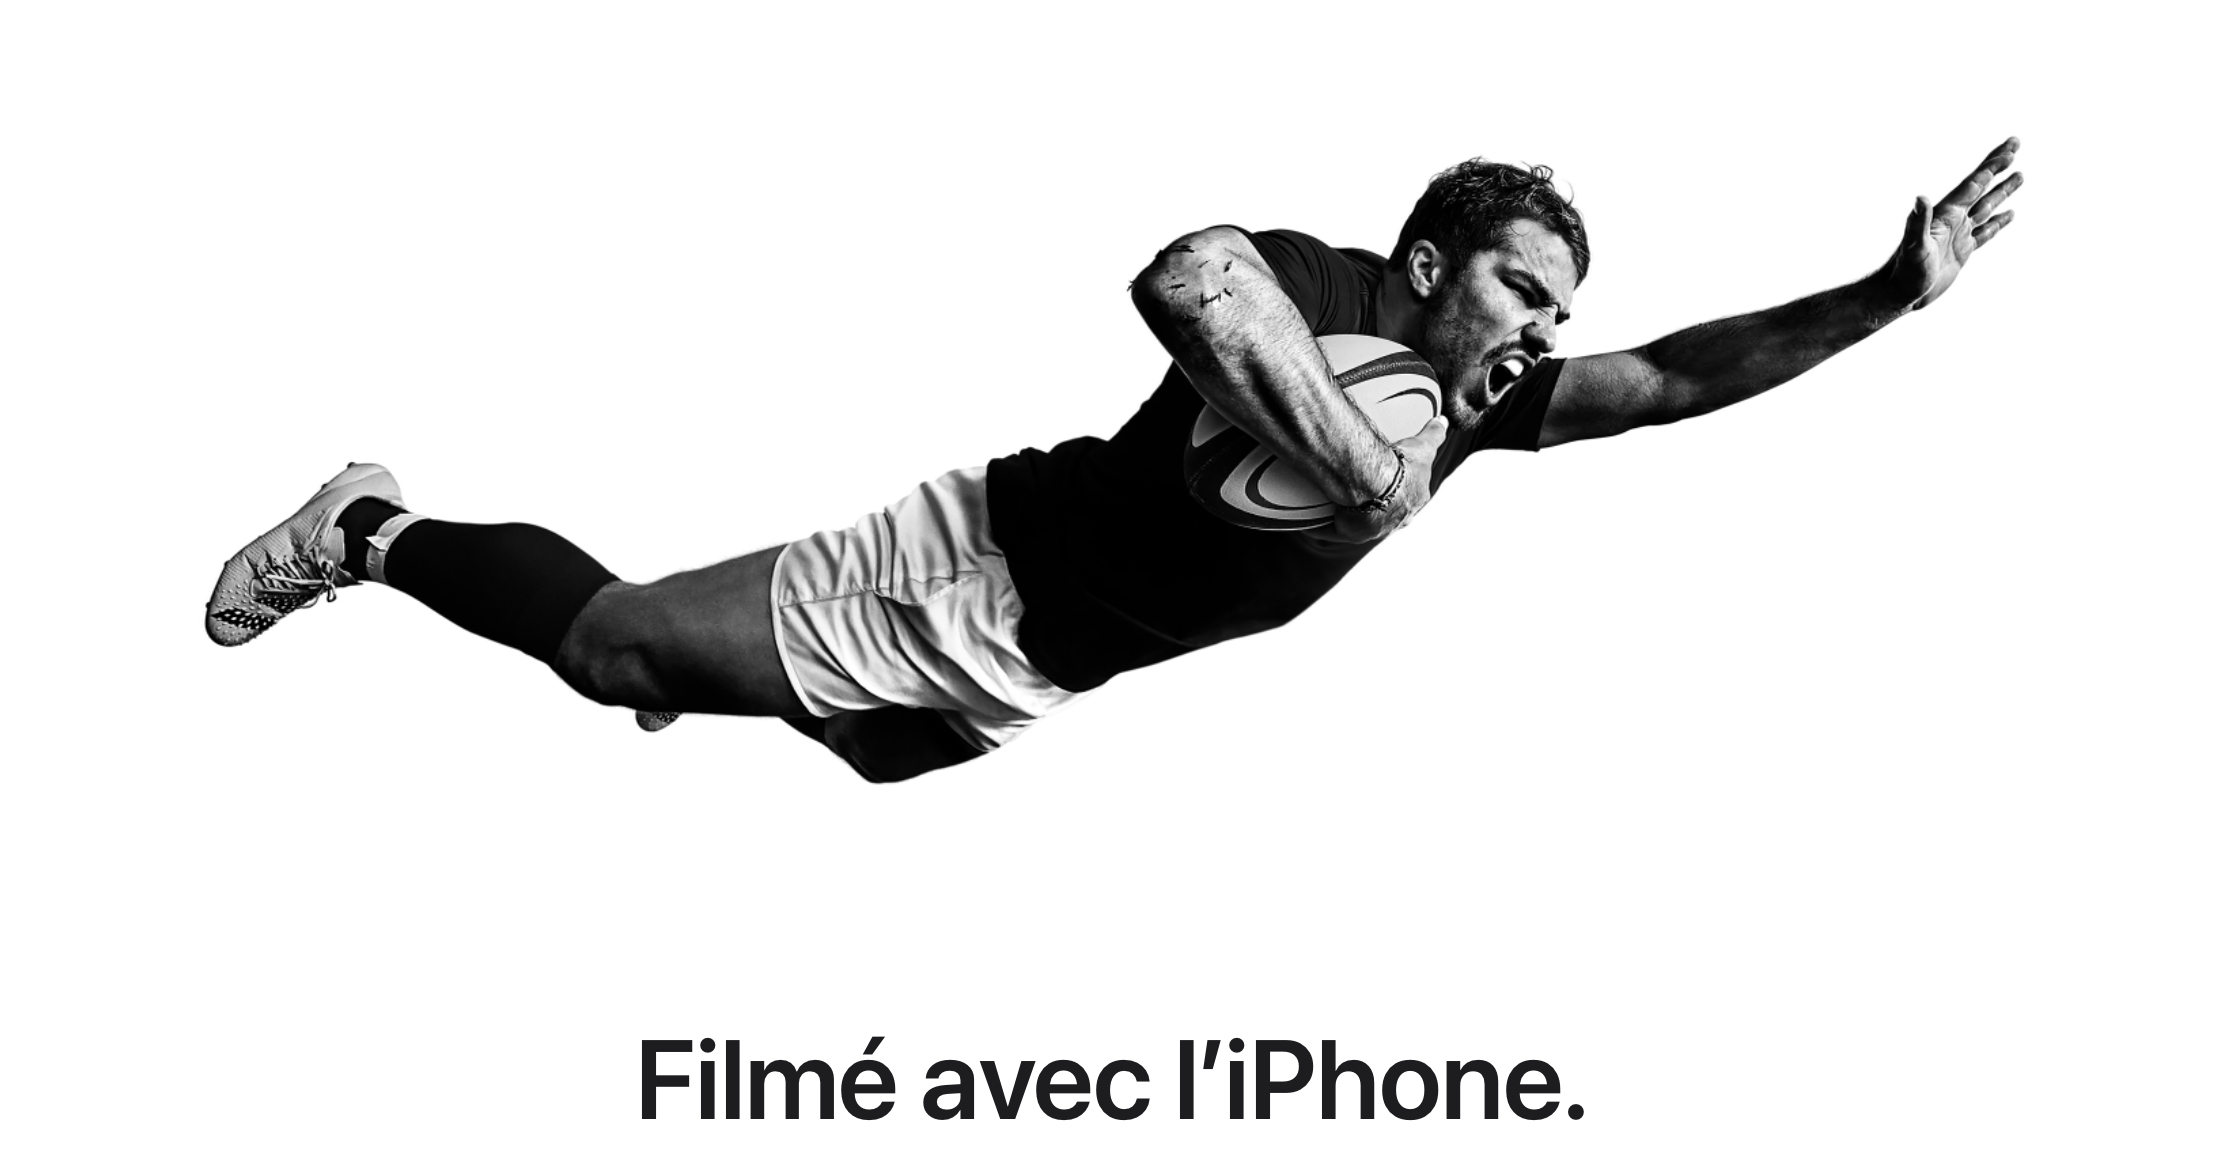 «Снимайте с iPhone» (пер. французский) – слоган новой регбийной рекламной кампании Apple во Франции